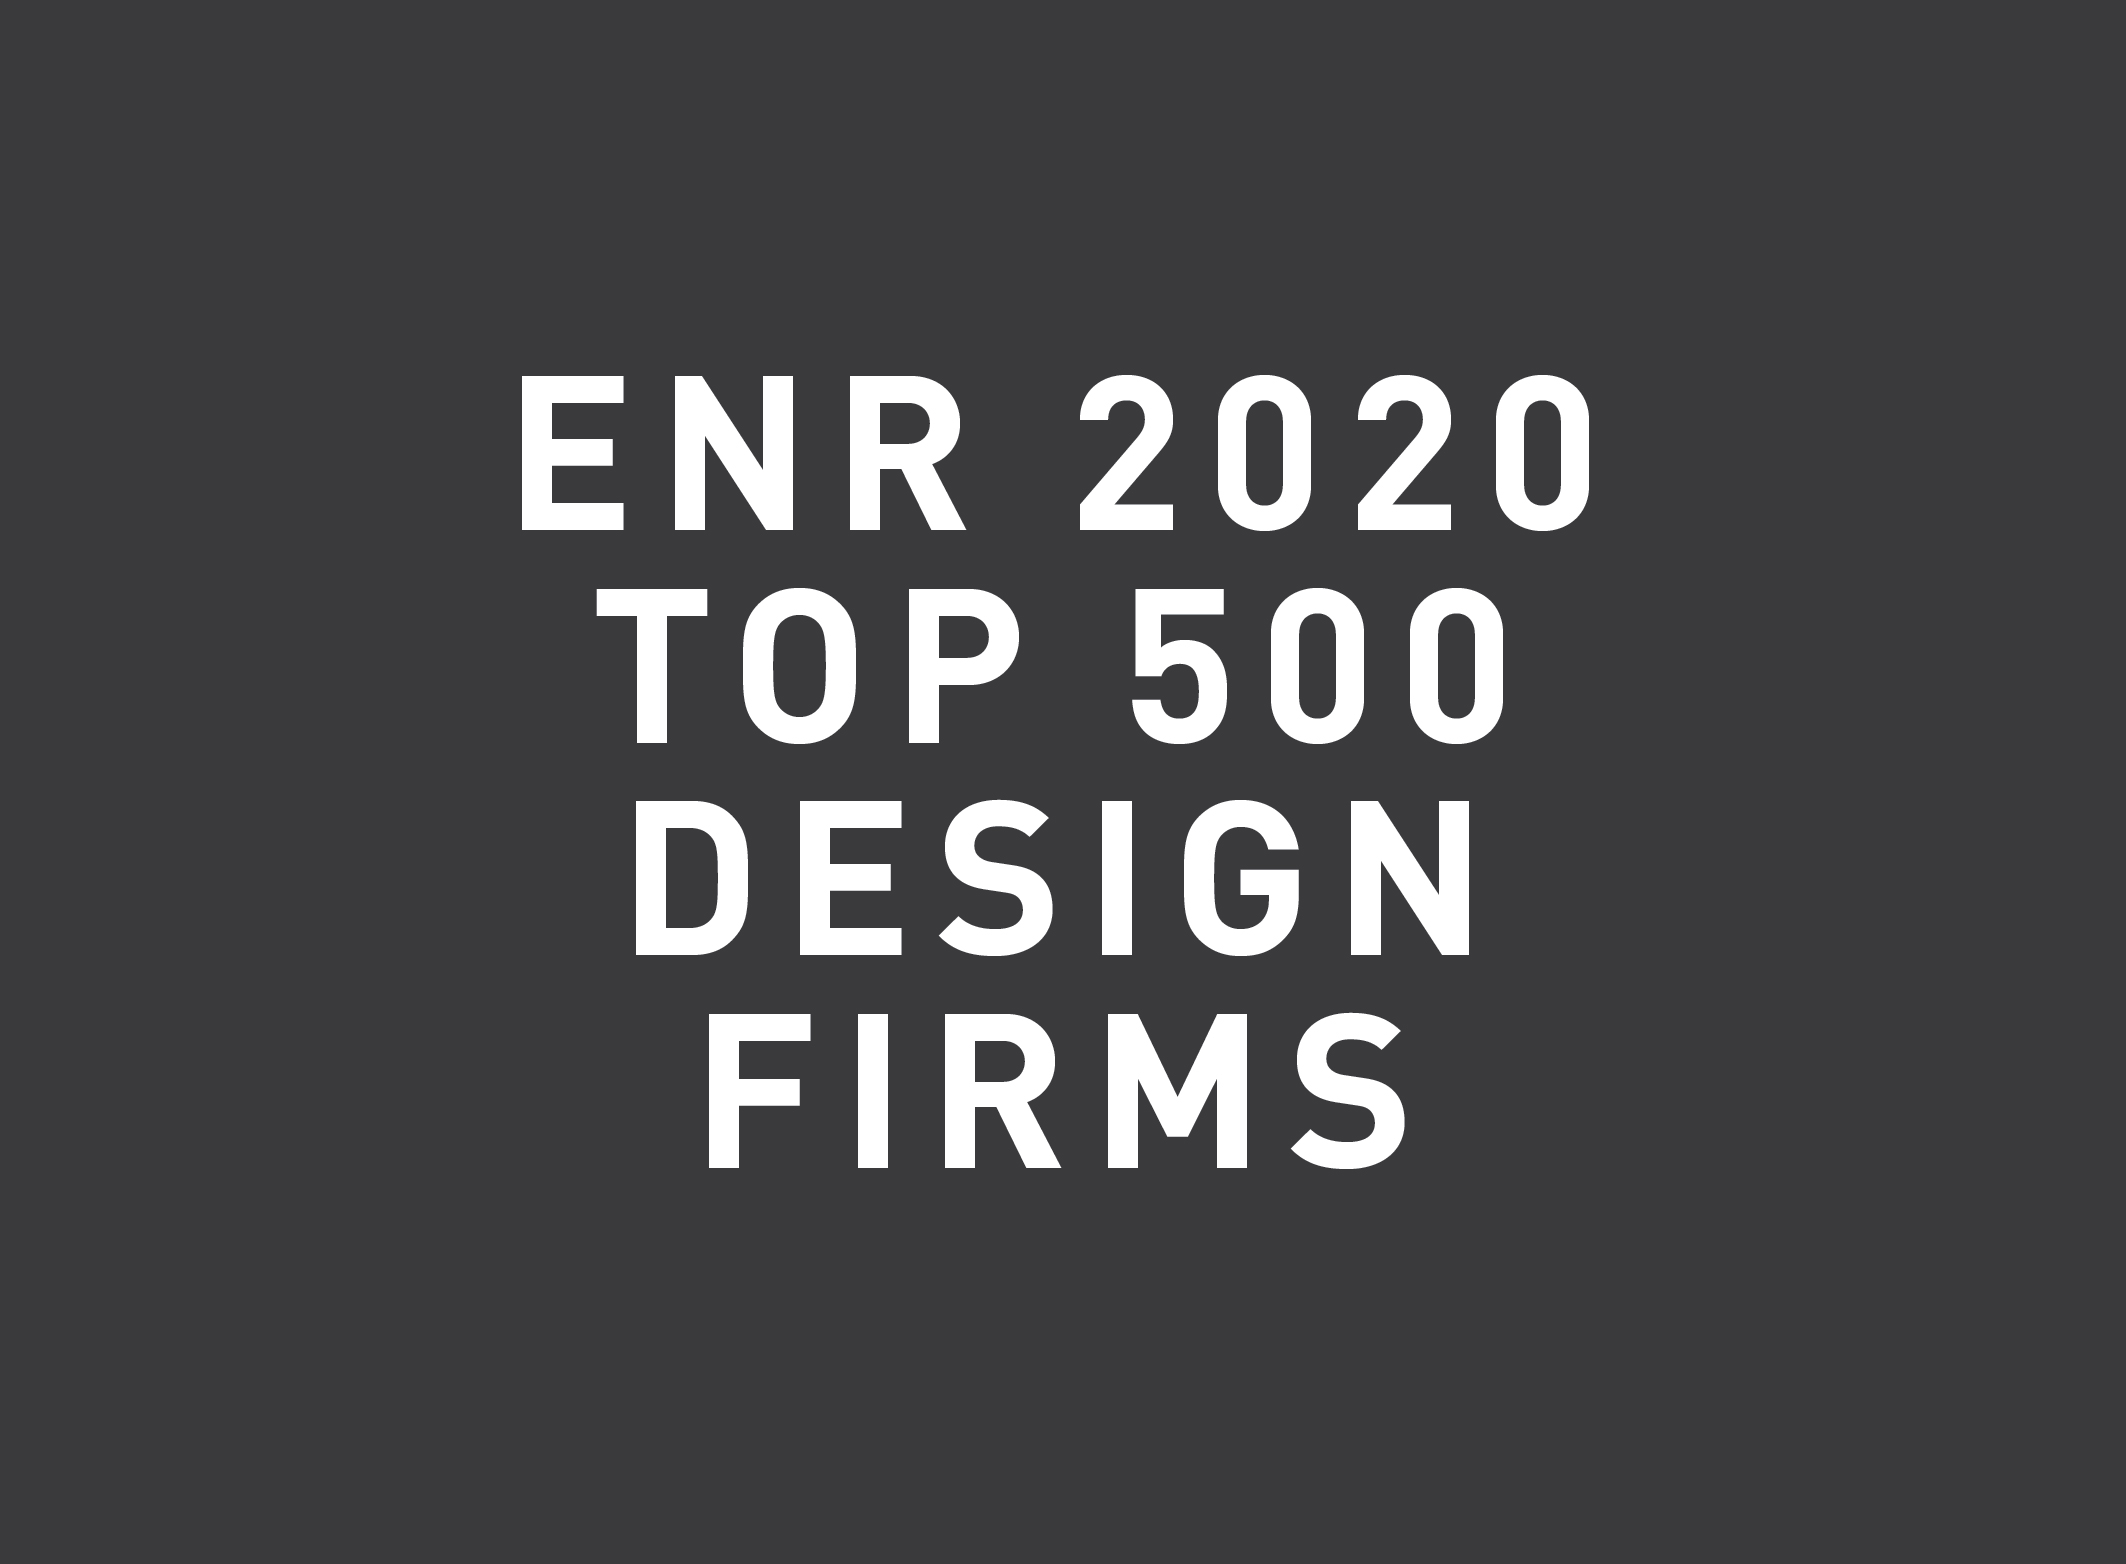 Primera ranked in 2020 ENR’s Top Design Firms List